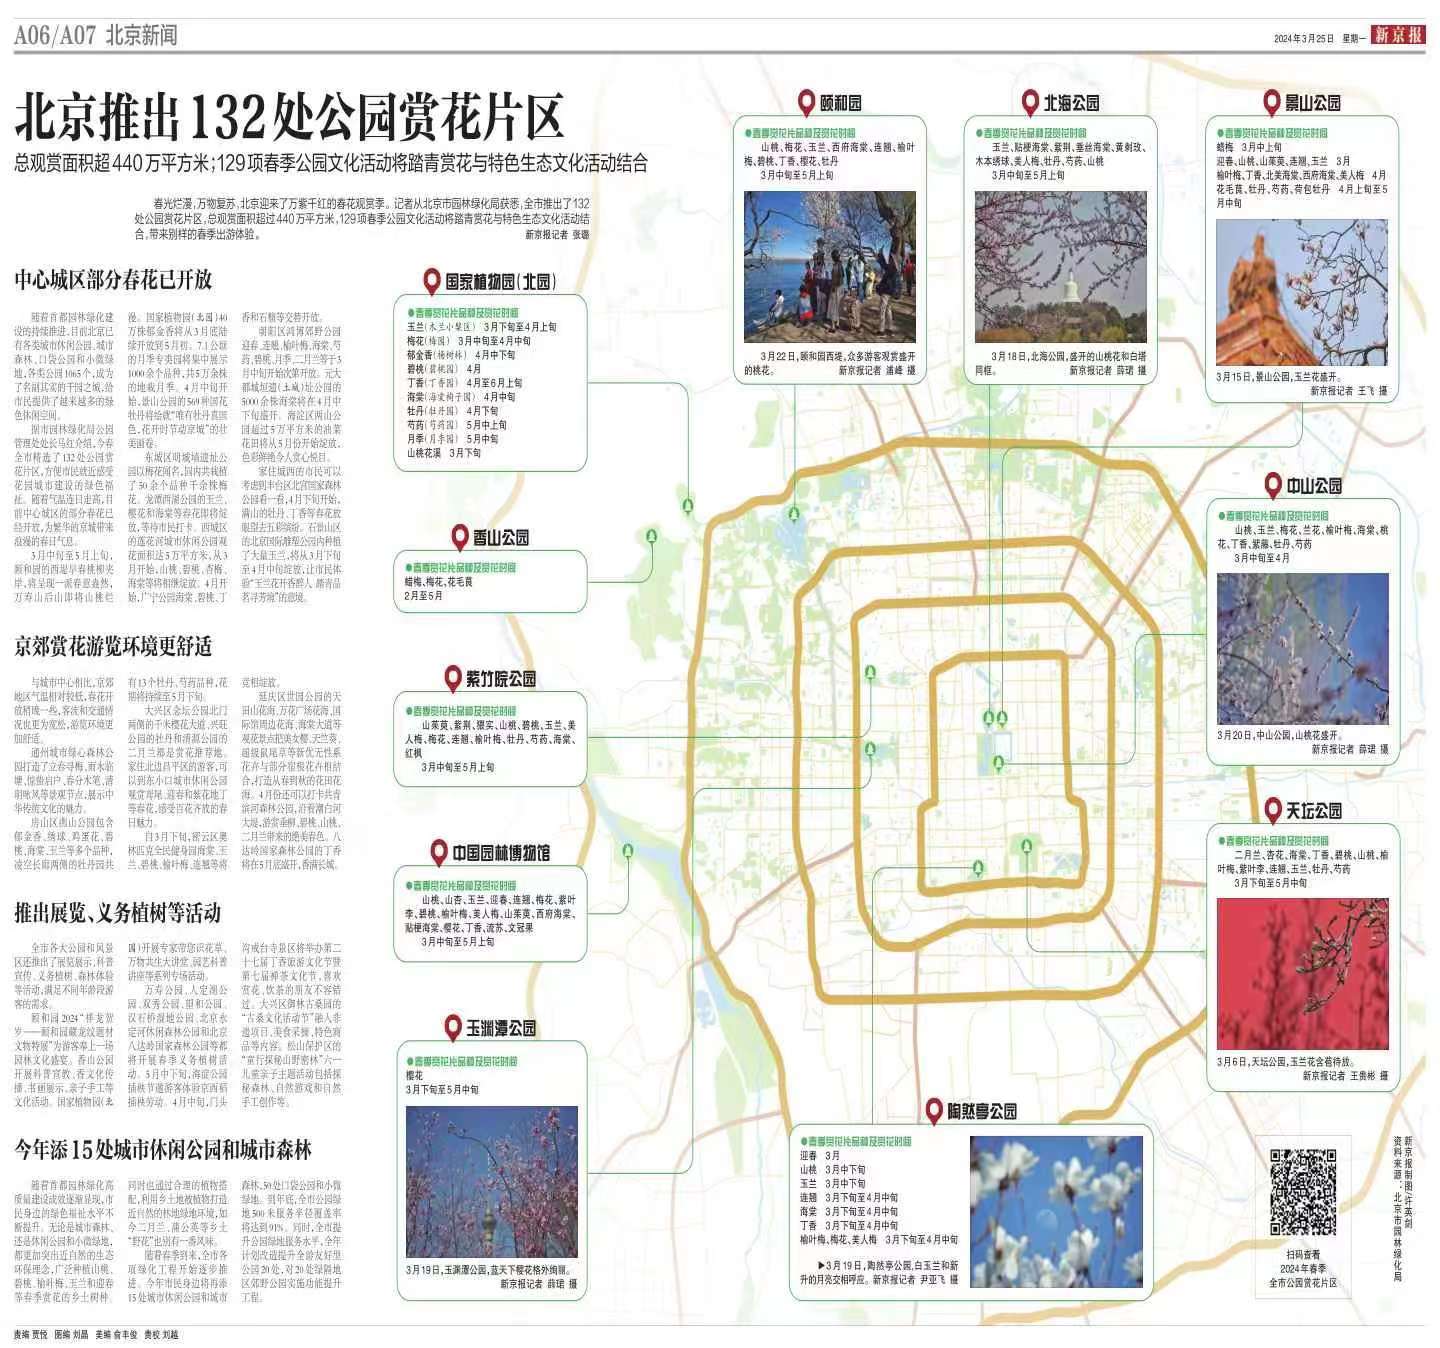 0325新京报-北京推出132处公园赏花片区.jpg